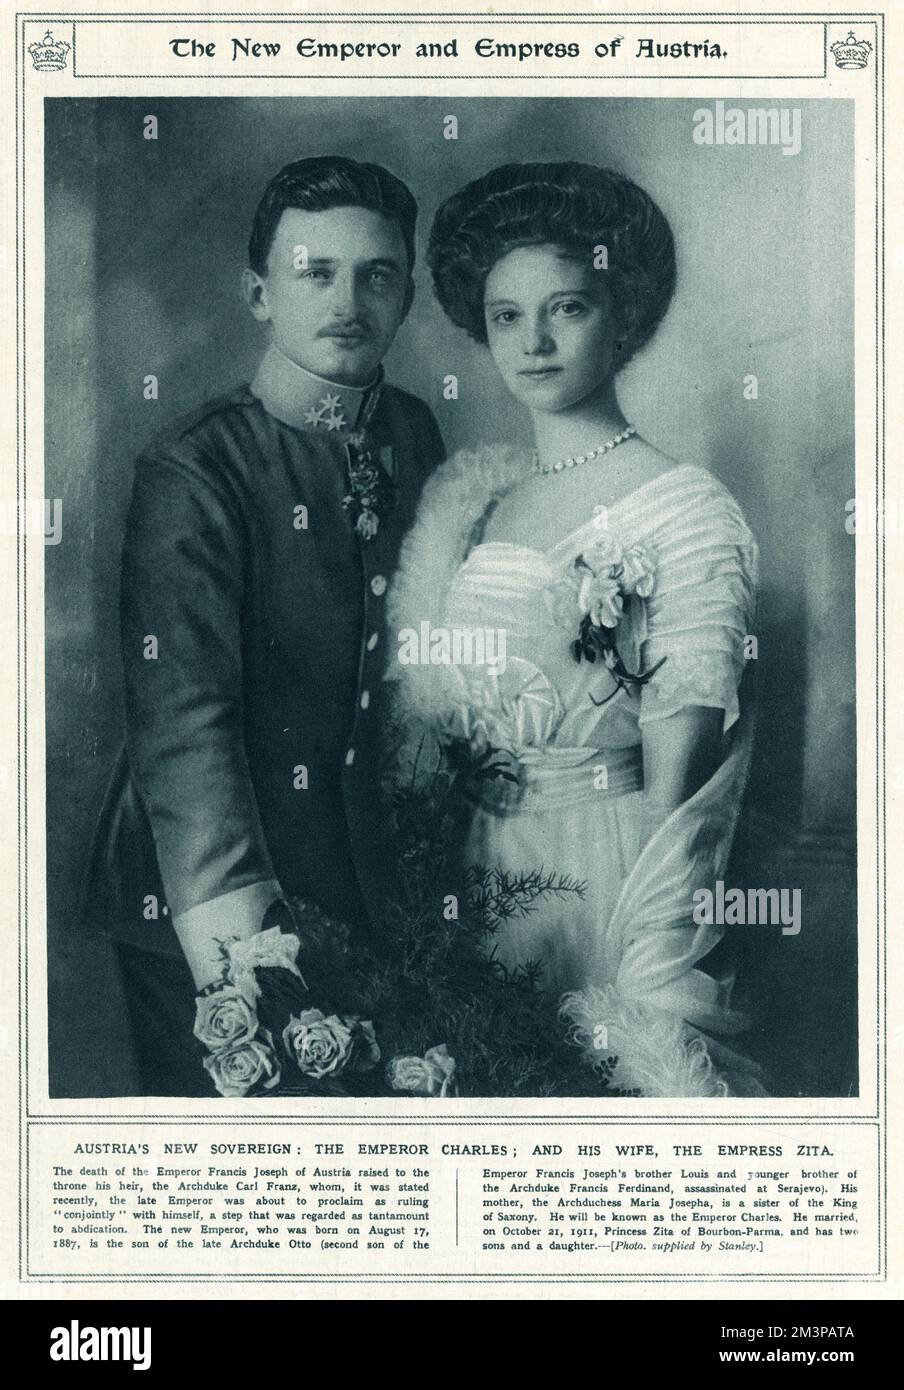 L'empereur Charles I d'Autriche ou Charles IV de Hongrie (1887 - 1922) avec la princesse Zita de Bourbon-Parme (1892 - 1989). L'empereur Charles Ier, dernier dirigeant de l'empire austro-hongrois, et le dernier empereur d'Autriche et de Hongrie. Il a régné comme Charles Ier comme empereur d'Autriche et Charles IV comme roi de Hongrie de 1916 à 1918, quand il a "renoncé à la participation" aux affaires de l'Etat, mais n'a pas abdication. Il a passé les années restantes de sa vie à tenter de restaurer la monarchie jusqu'à sa mort en 1922. Banque D'Images